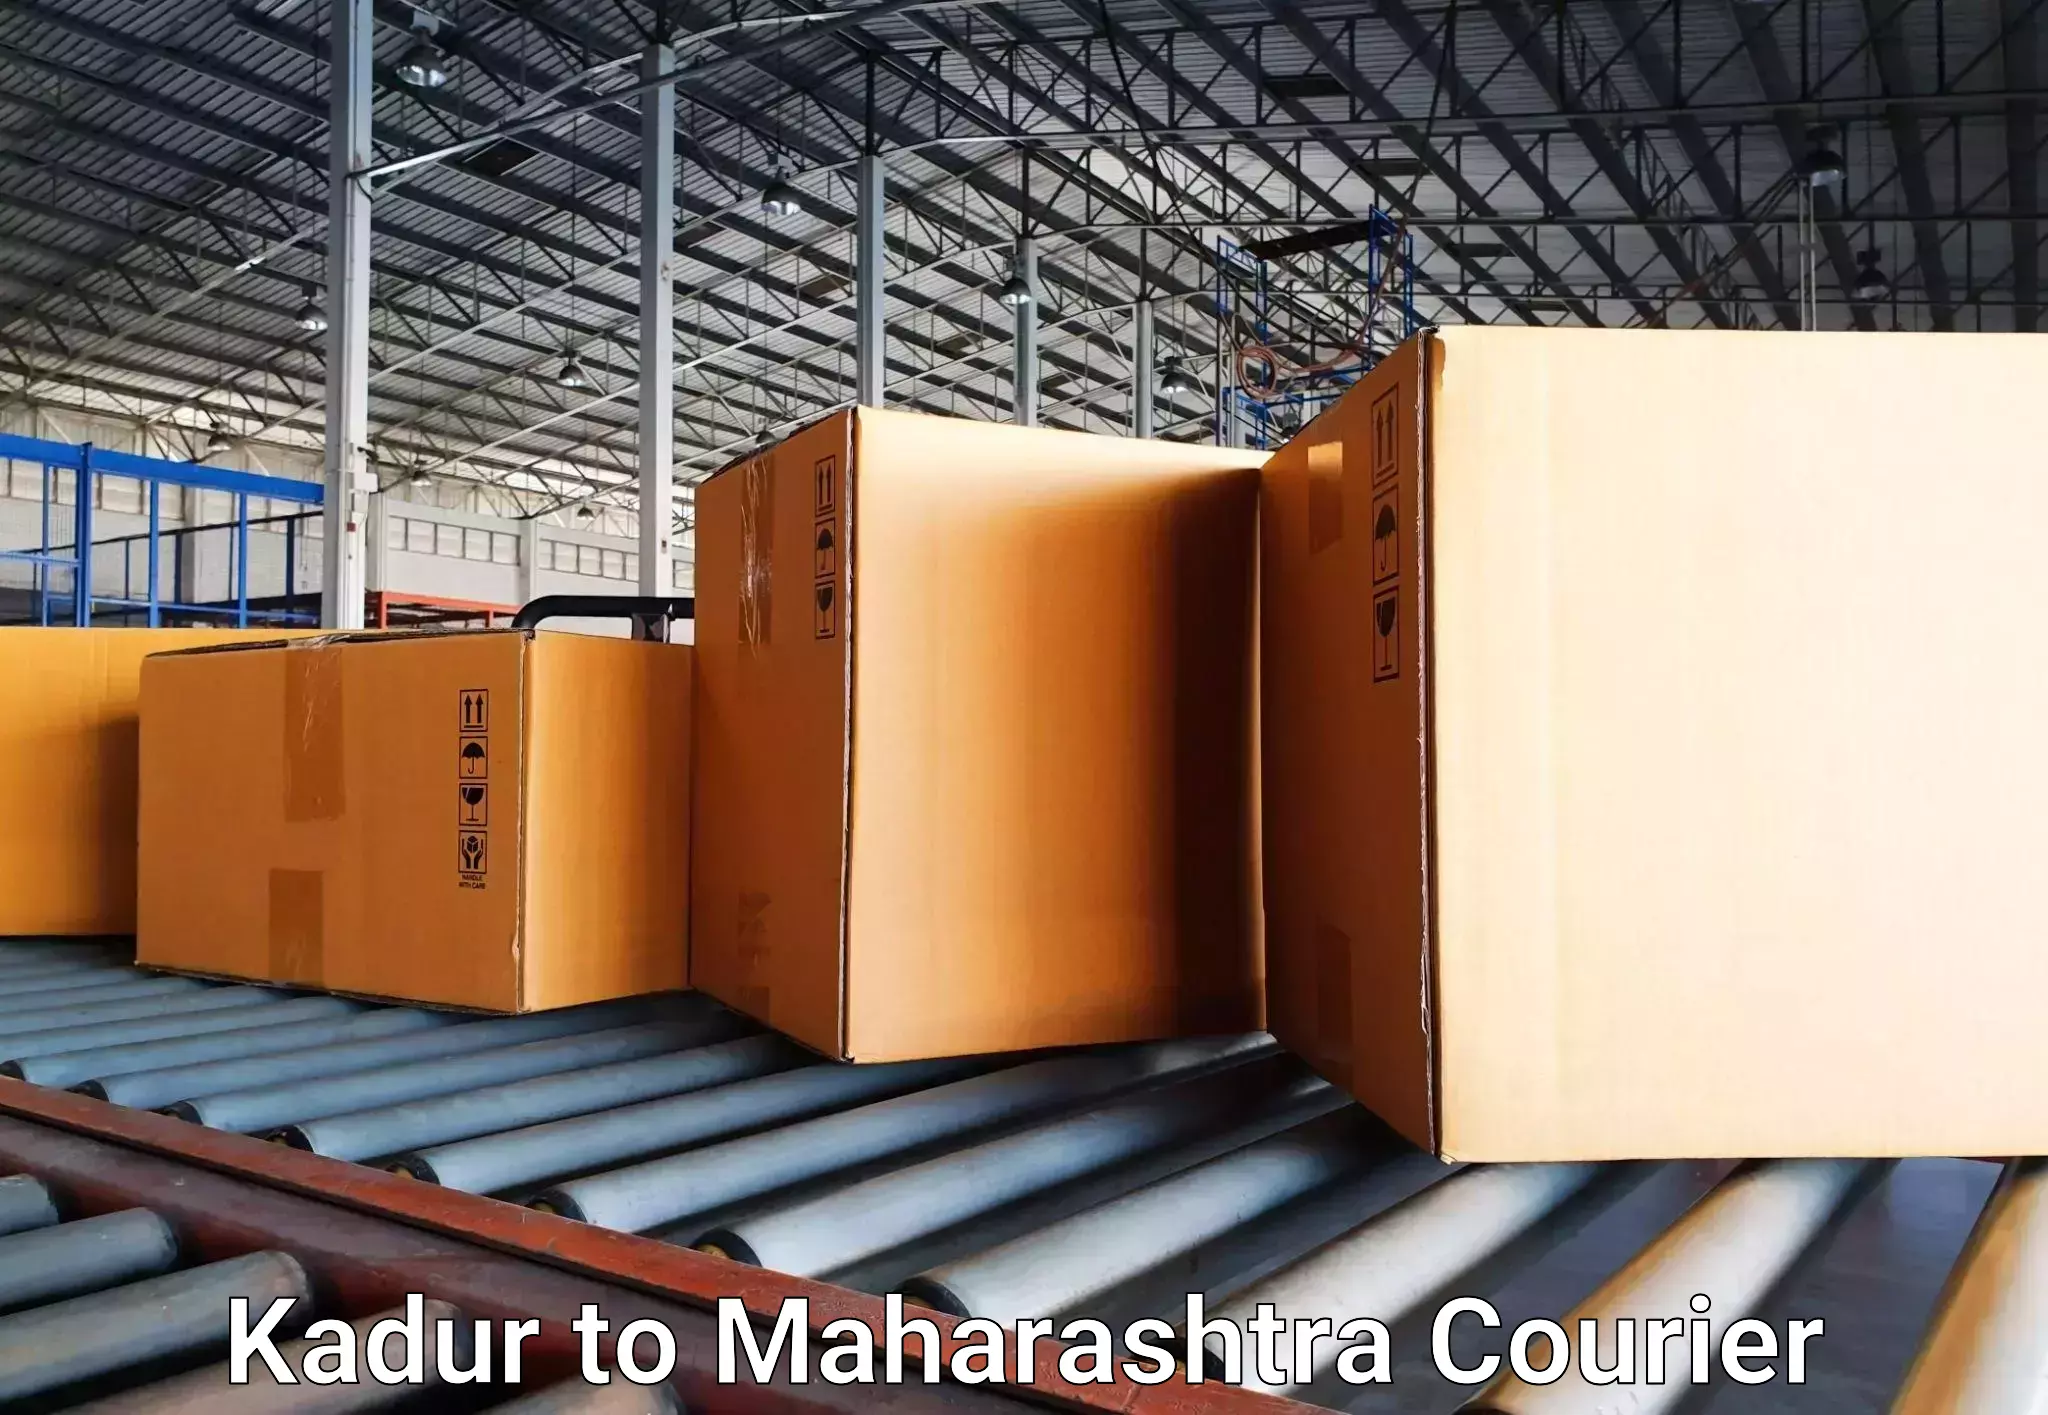 Luggage delivery network Kadur to Vaijapur